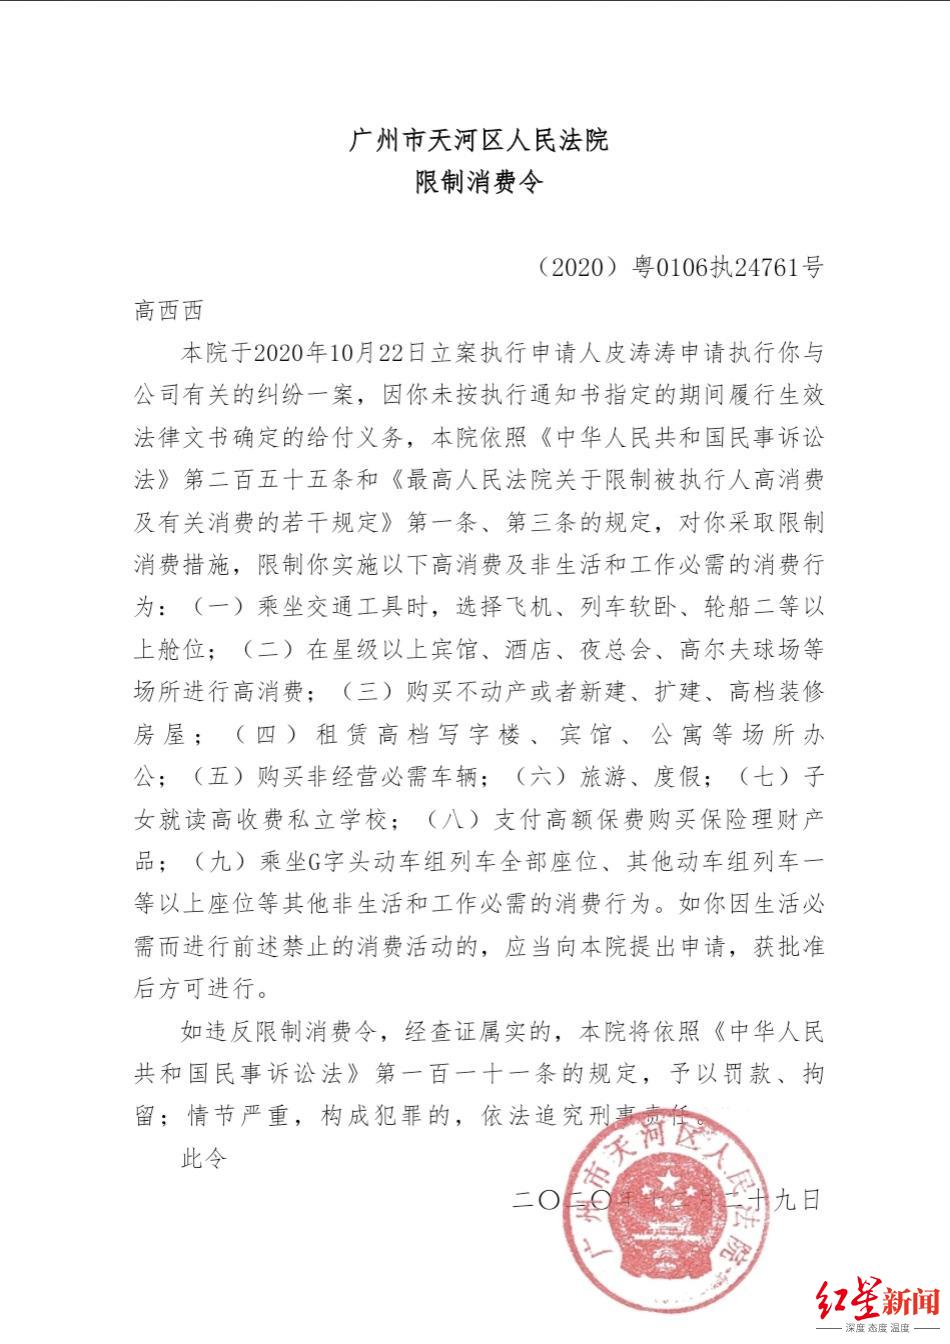 广州市天河区发布的限制消费令